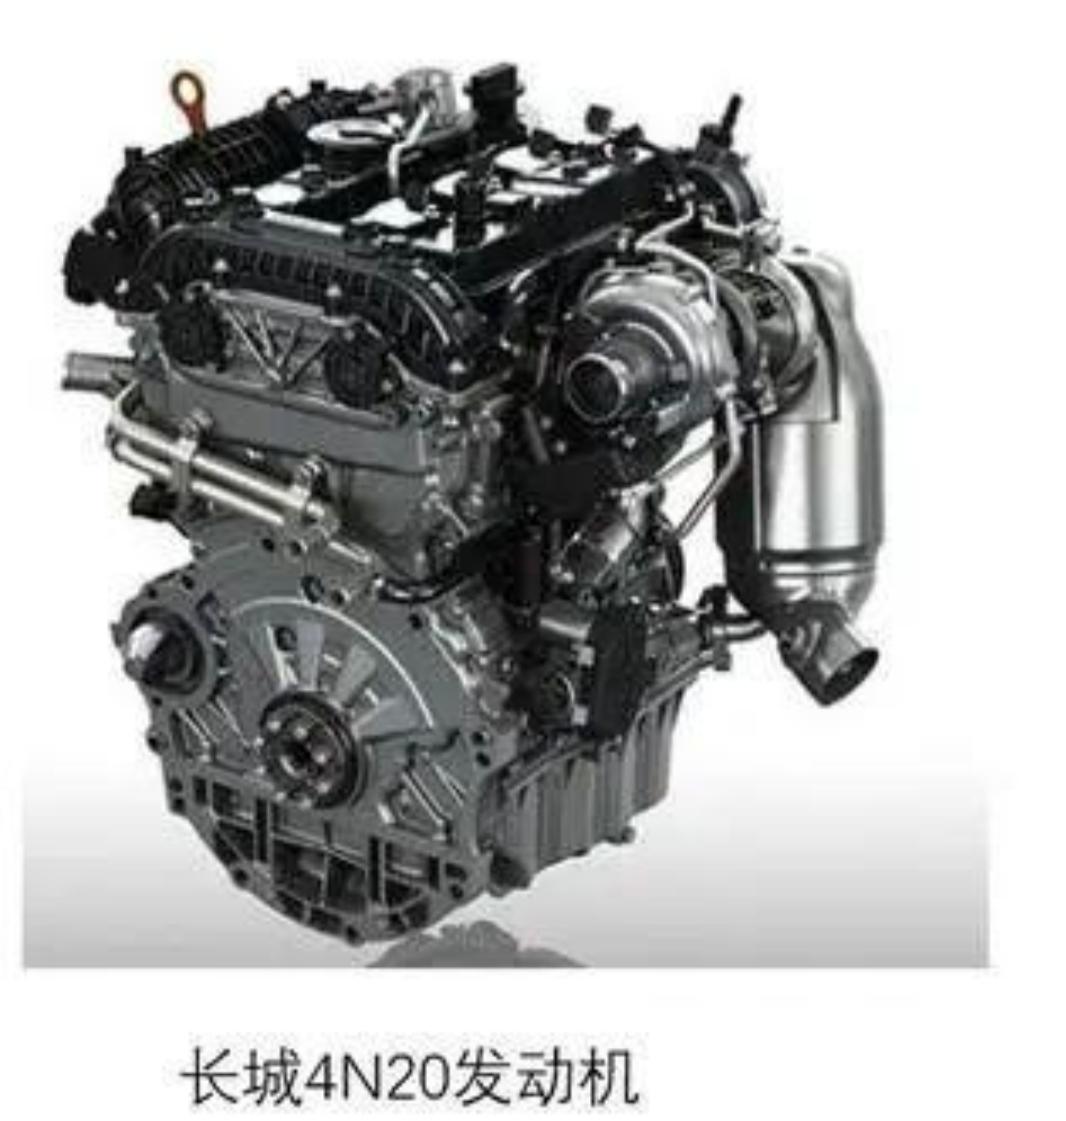 哈弗H9 长城的GW4N20发动机怎么样？高功率版什么时候真正用到车上？会不会用到H9上？